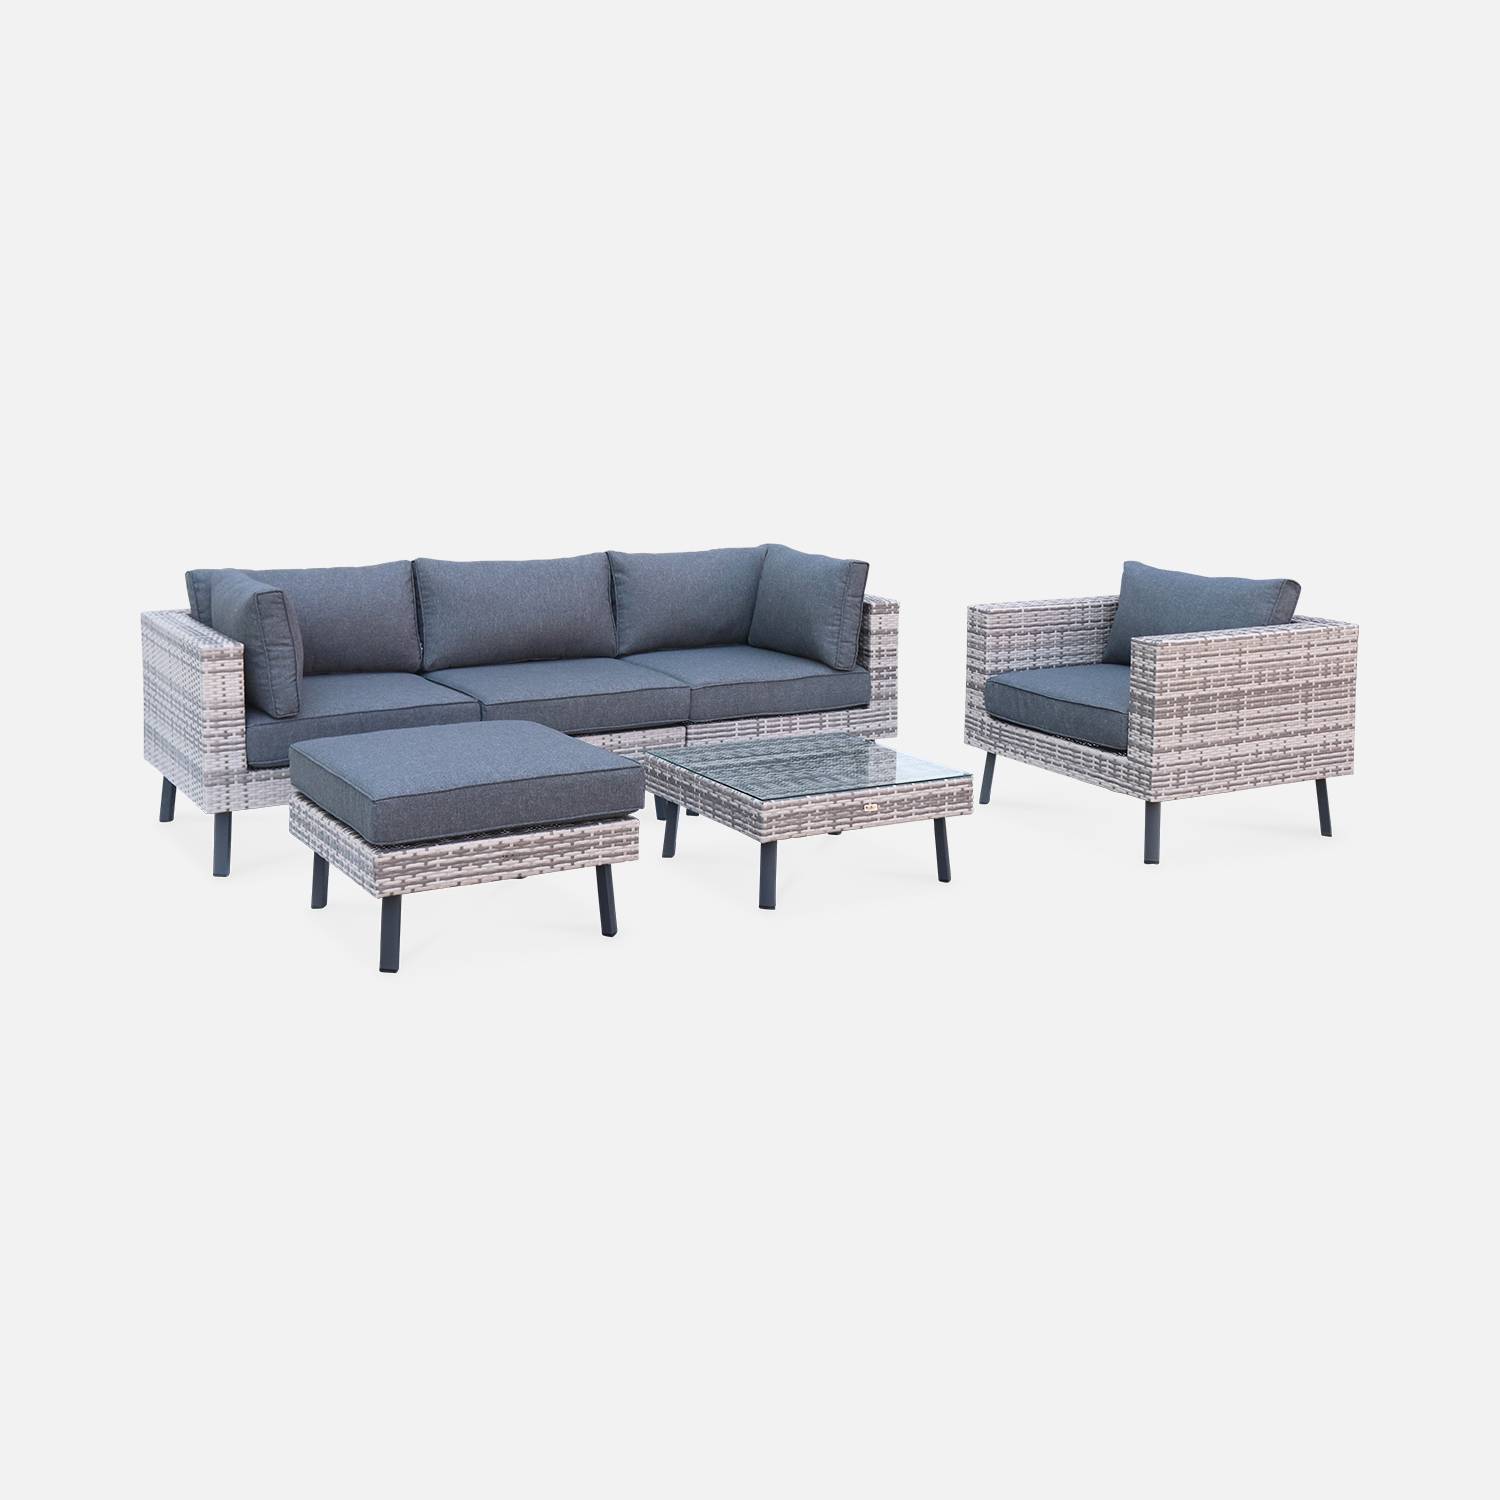 Conjunto de muebles de jardín de 5 plazas en resina tejida plana - Alba - tonos de gris y cojines gris oscuro Photo2